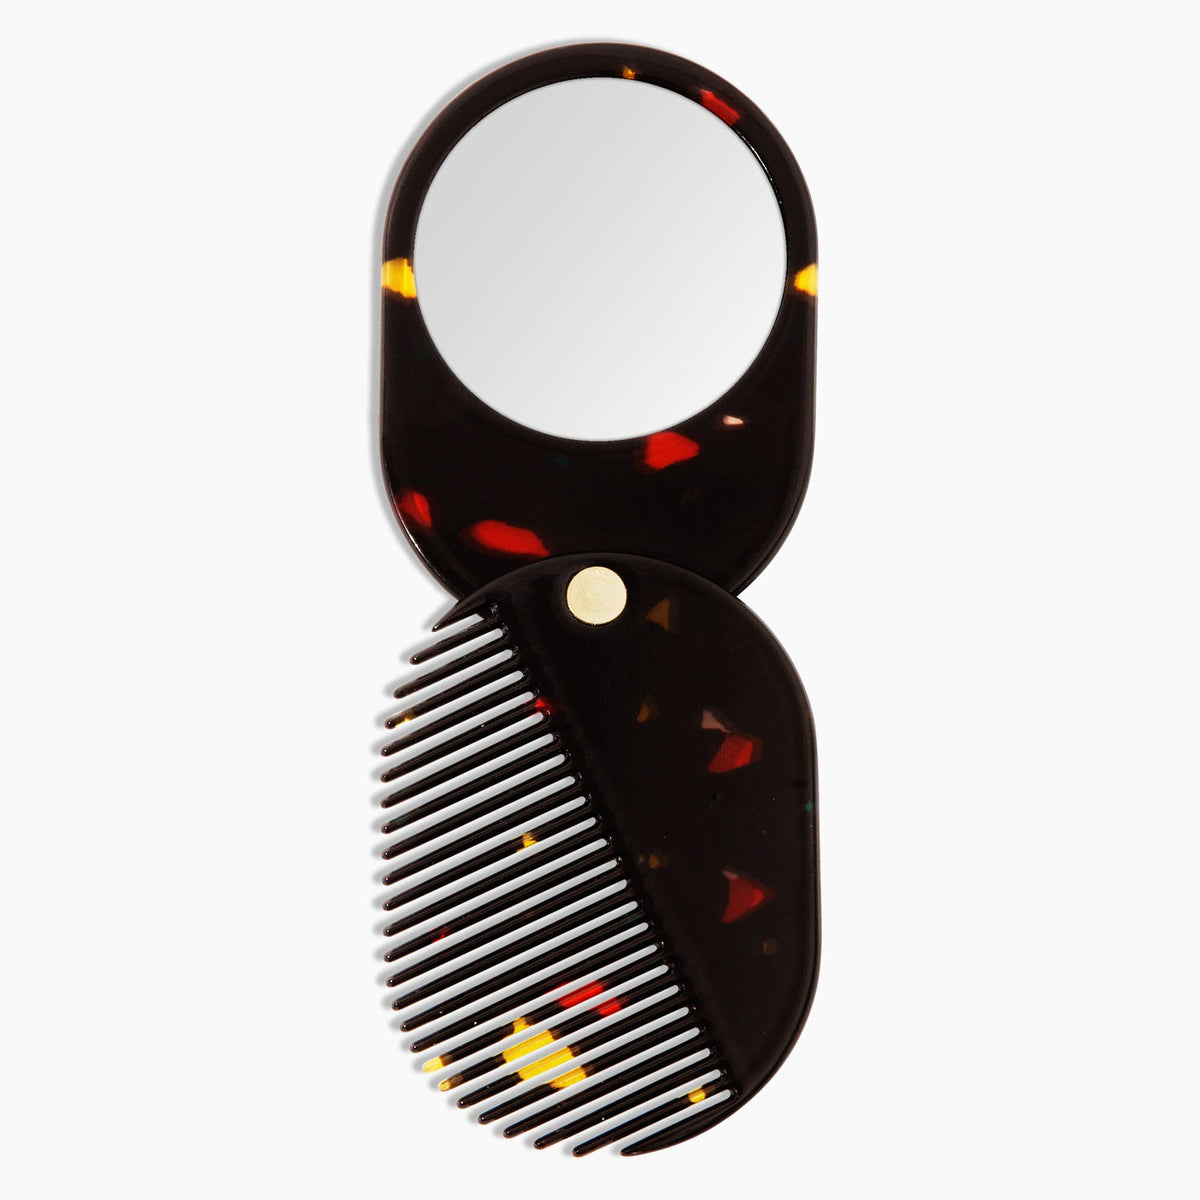 2 in 1 Pocket Comb Mirror in Black Amber | Poketo